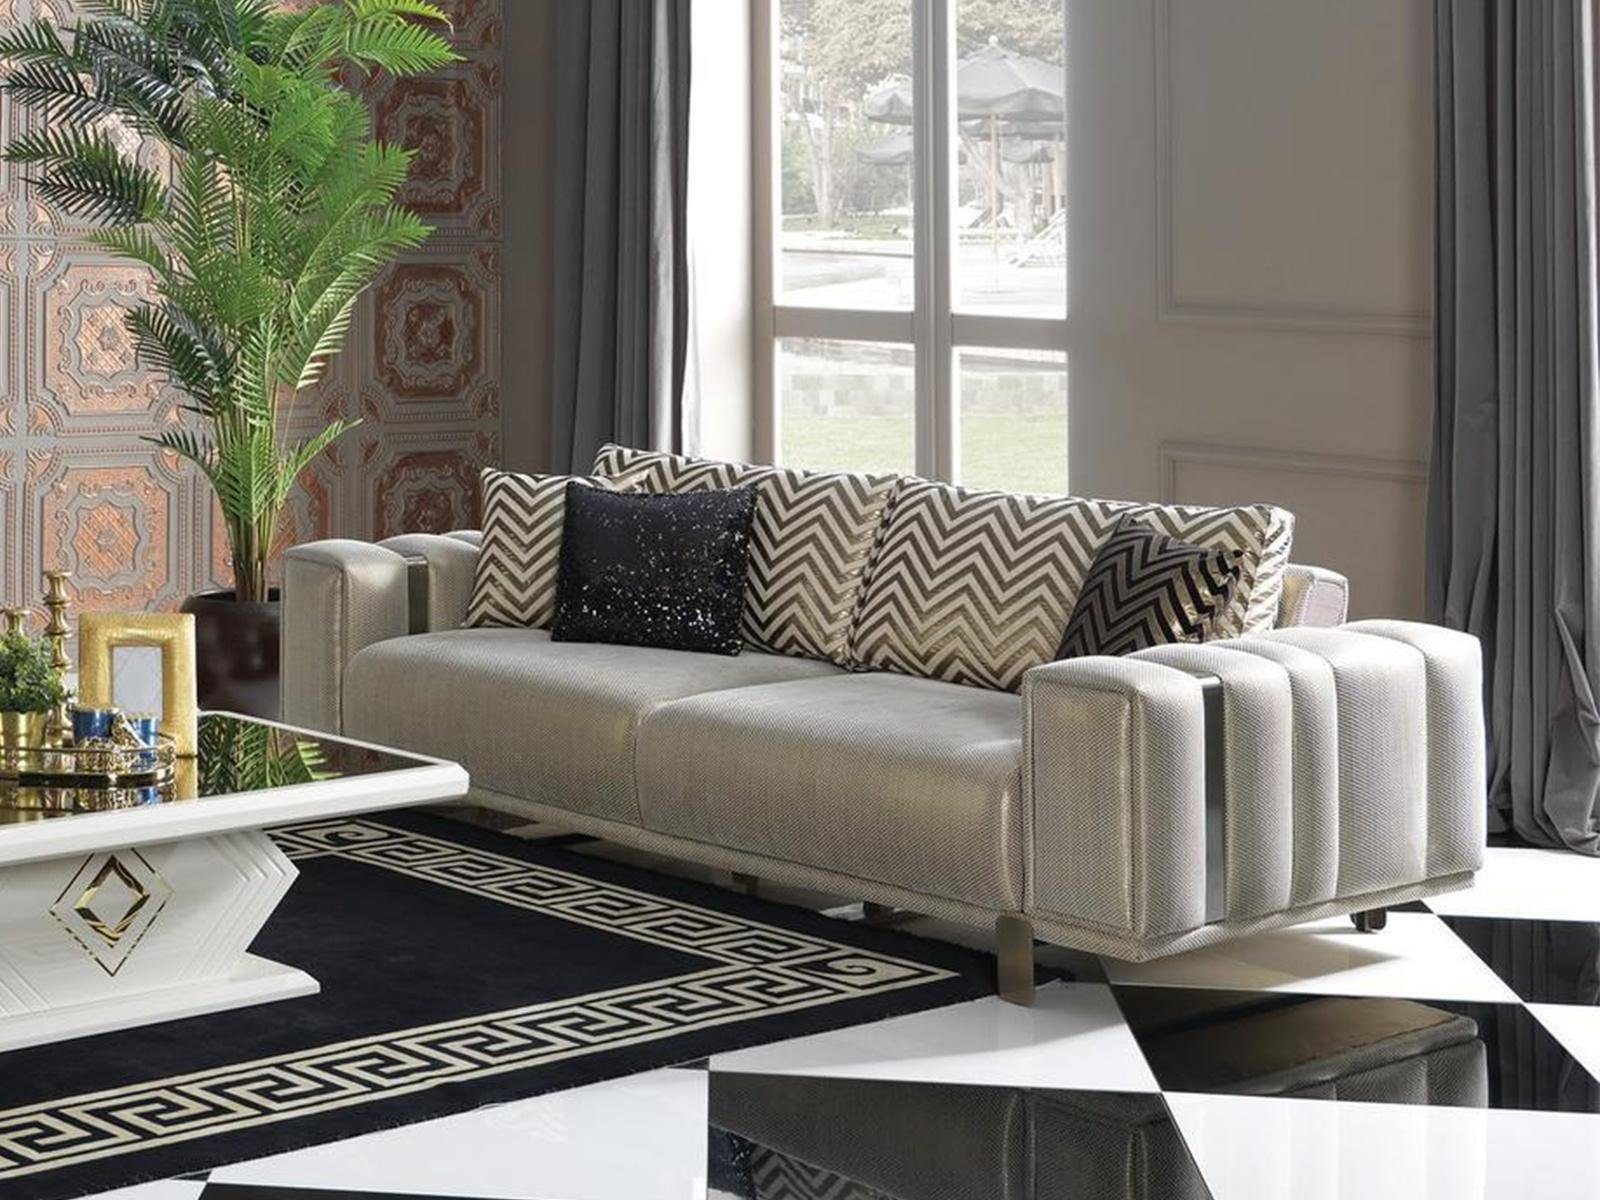 JVmoebel 2-Sitzer Möbel Sofa 2 Sitzer Couch Wonzimmer in Teile, Couchen, Design Zweisitzer Europa Made 1